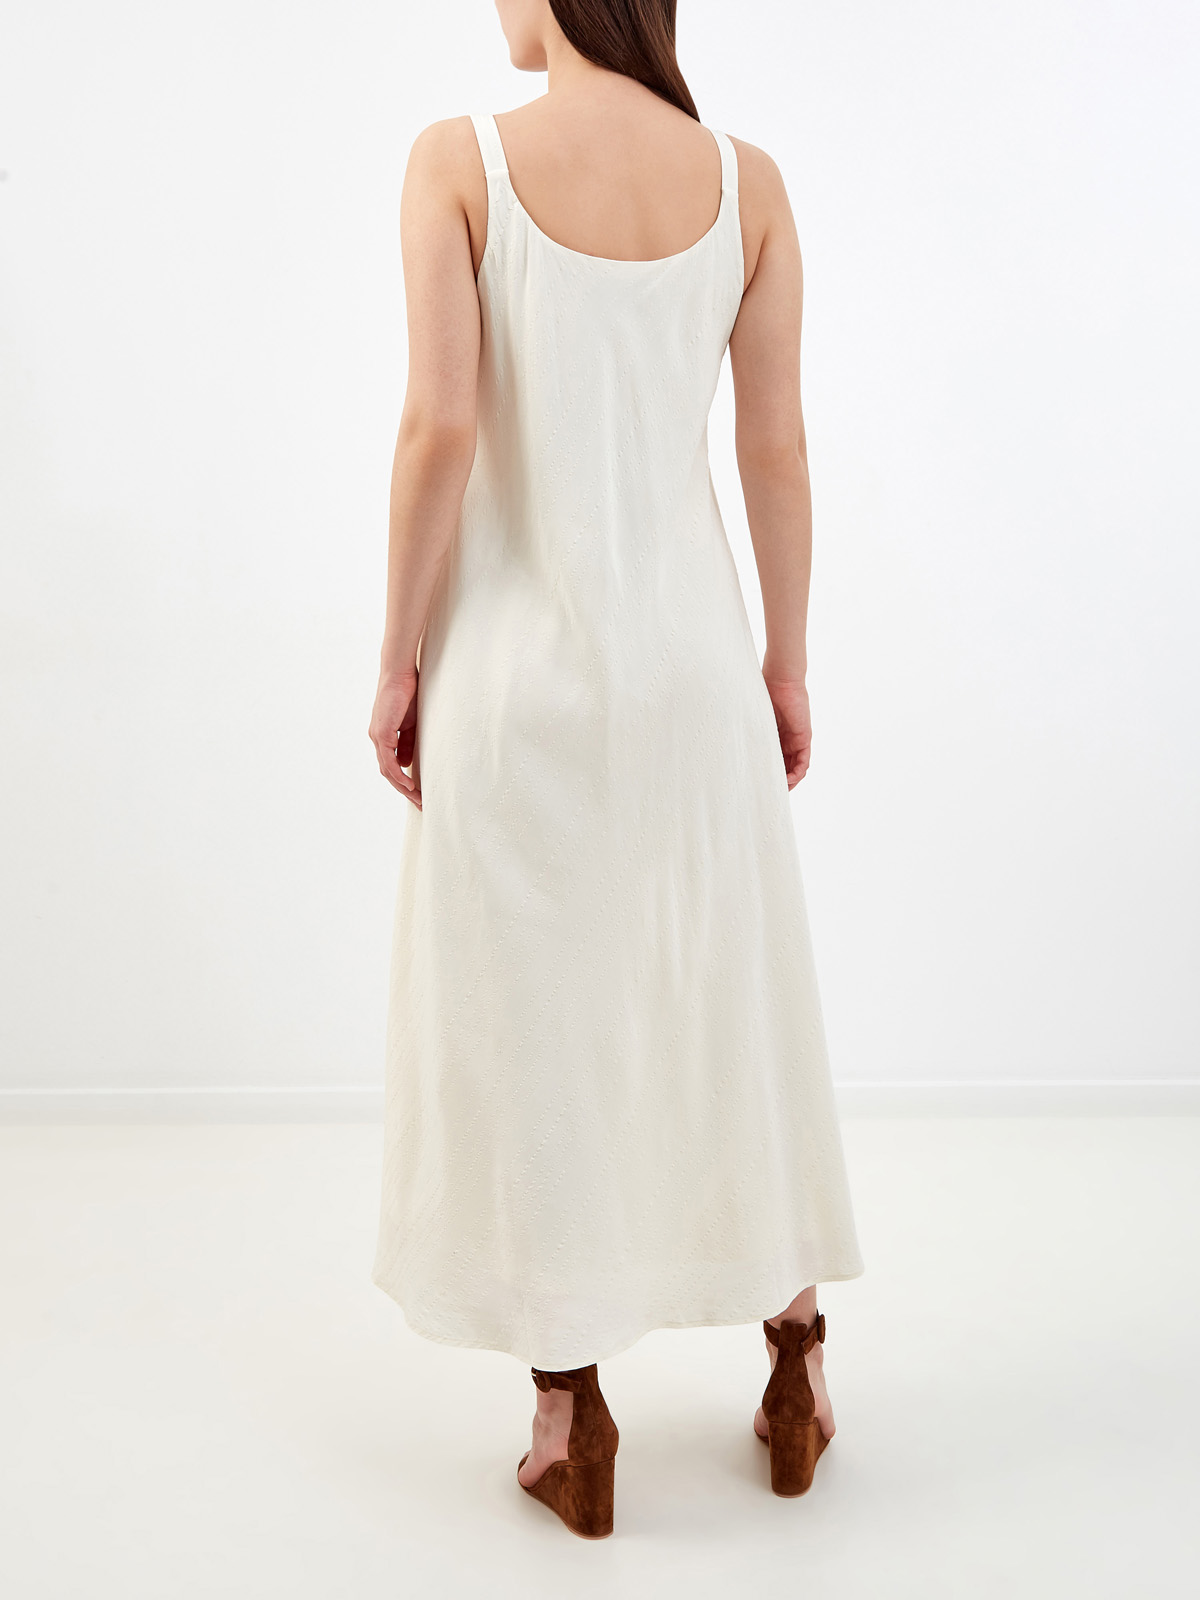 Легкое платье из вискозы и льна с декоративной прострочкой RE VERA, цвет белый, размер M;L;S - фото 4